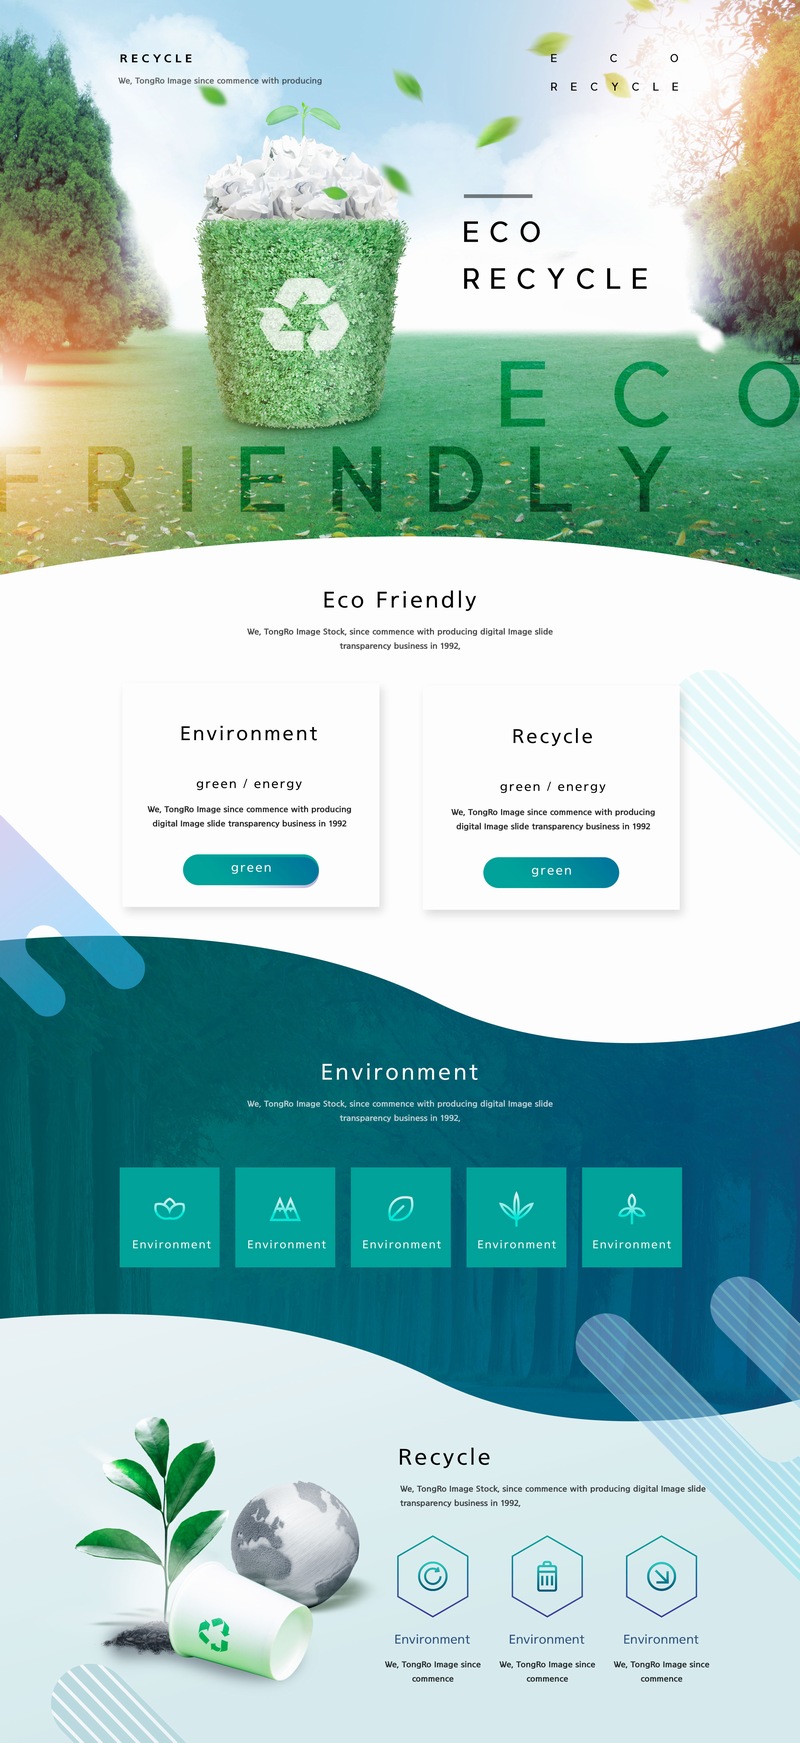 爱护环境绿色垃圾桶环保网页设计模板素材